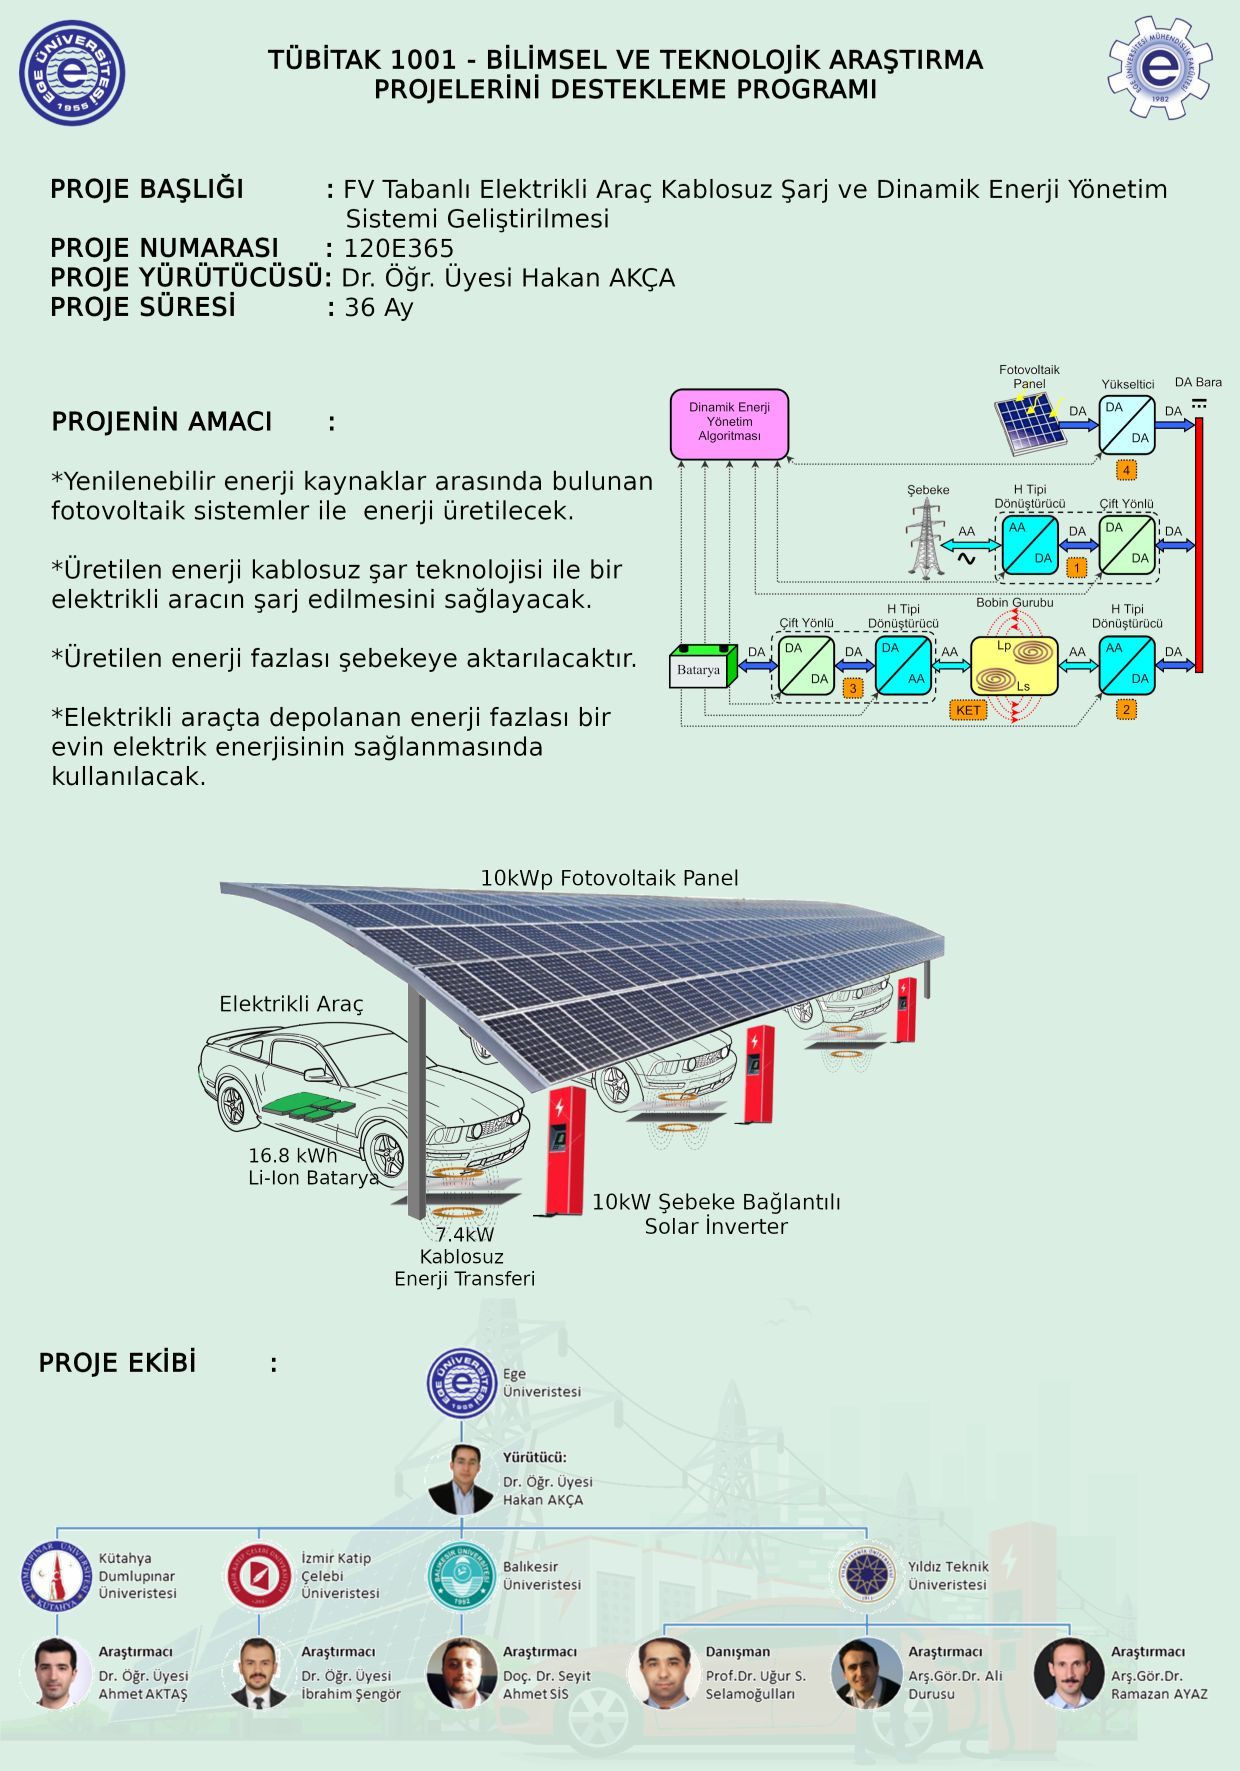 Projenin amacı, yenilenebilir enerji kaynakları arasında bulunan fotovoltaik sistemlerle enerji üretimi.